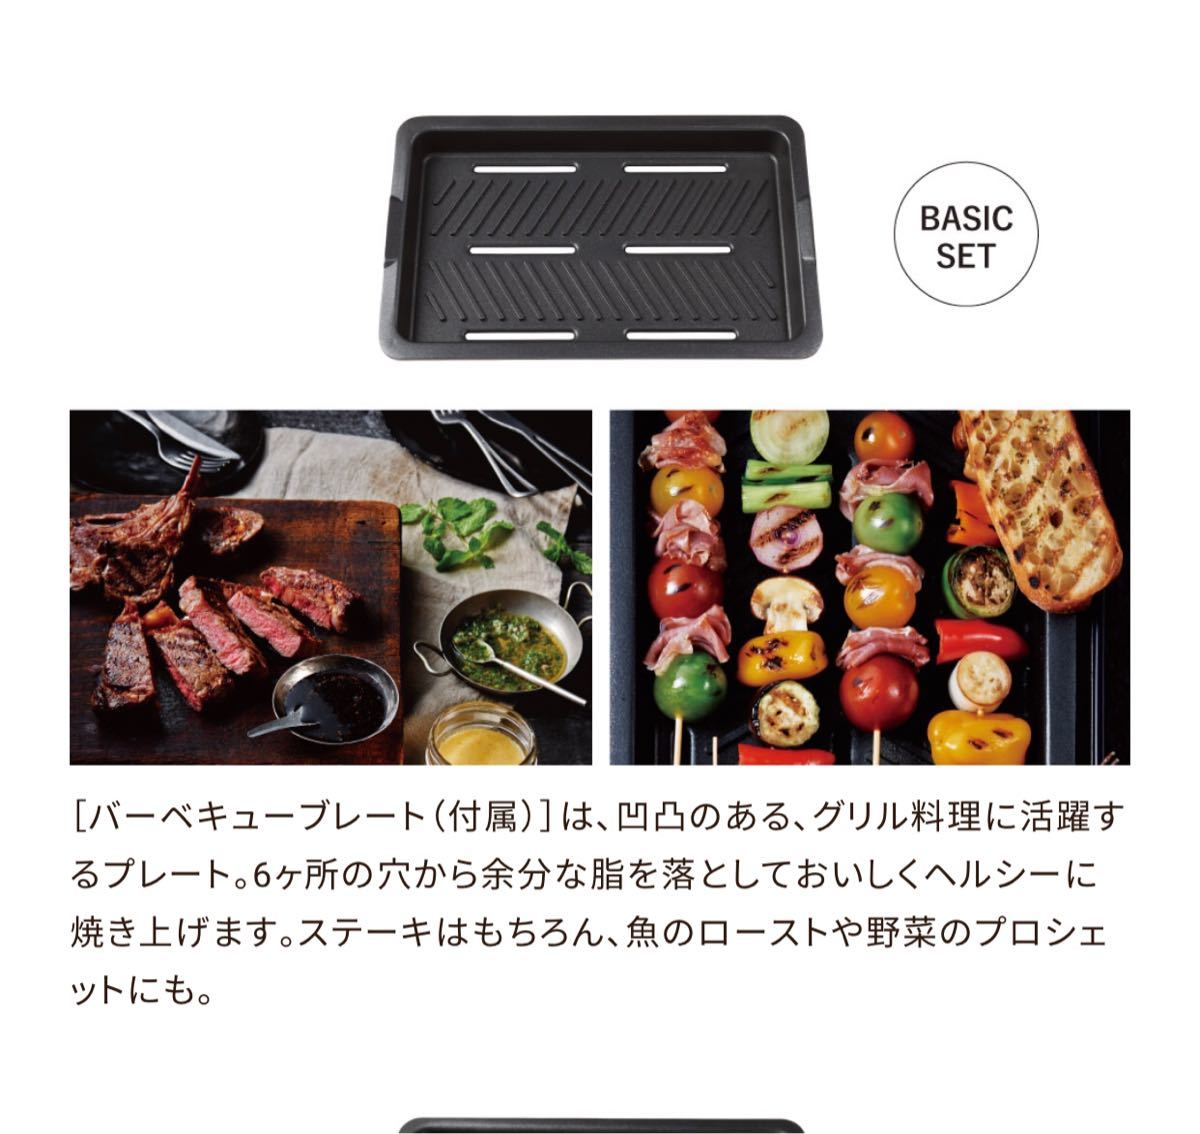 【新品未使用、送料込み】recolte Home BBQ レッド赤 ホットプレート レコルト